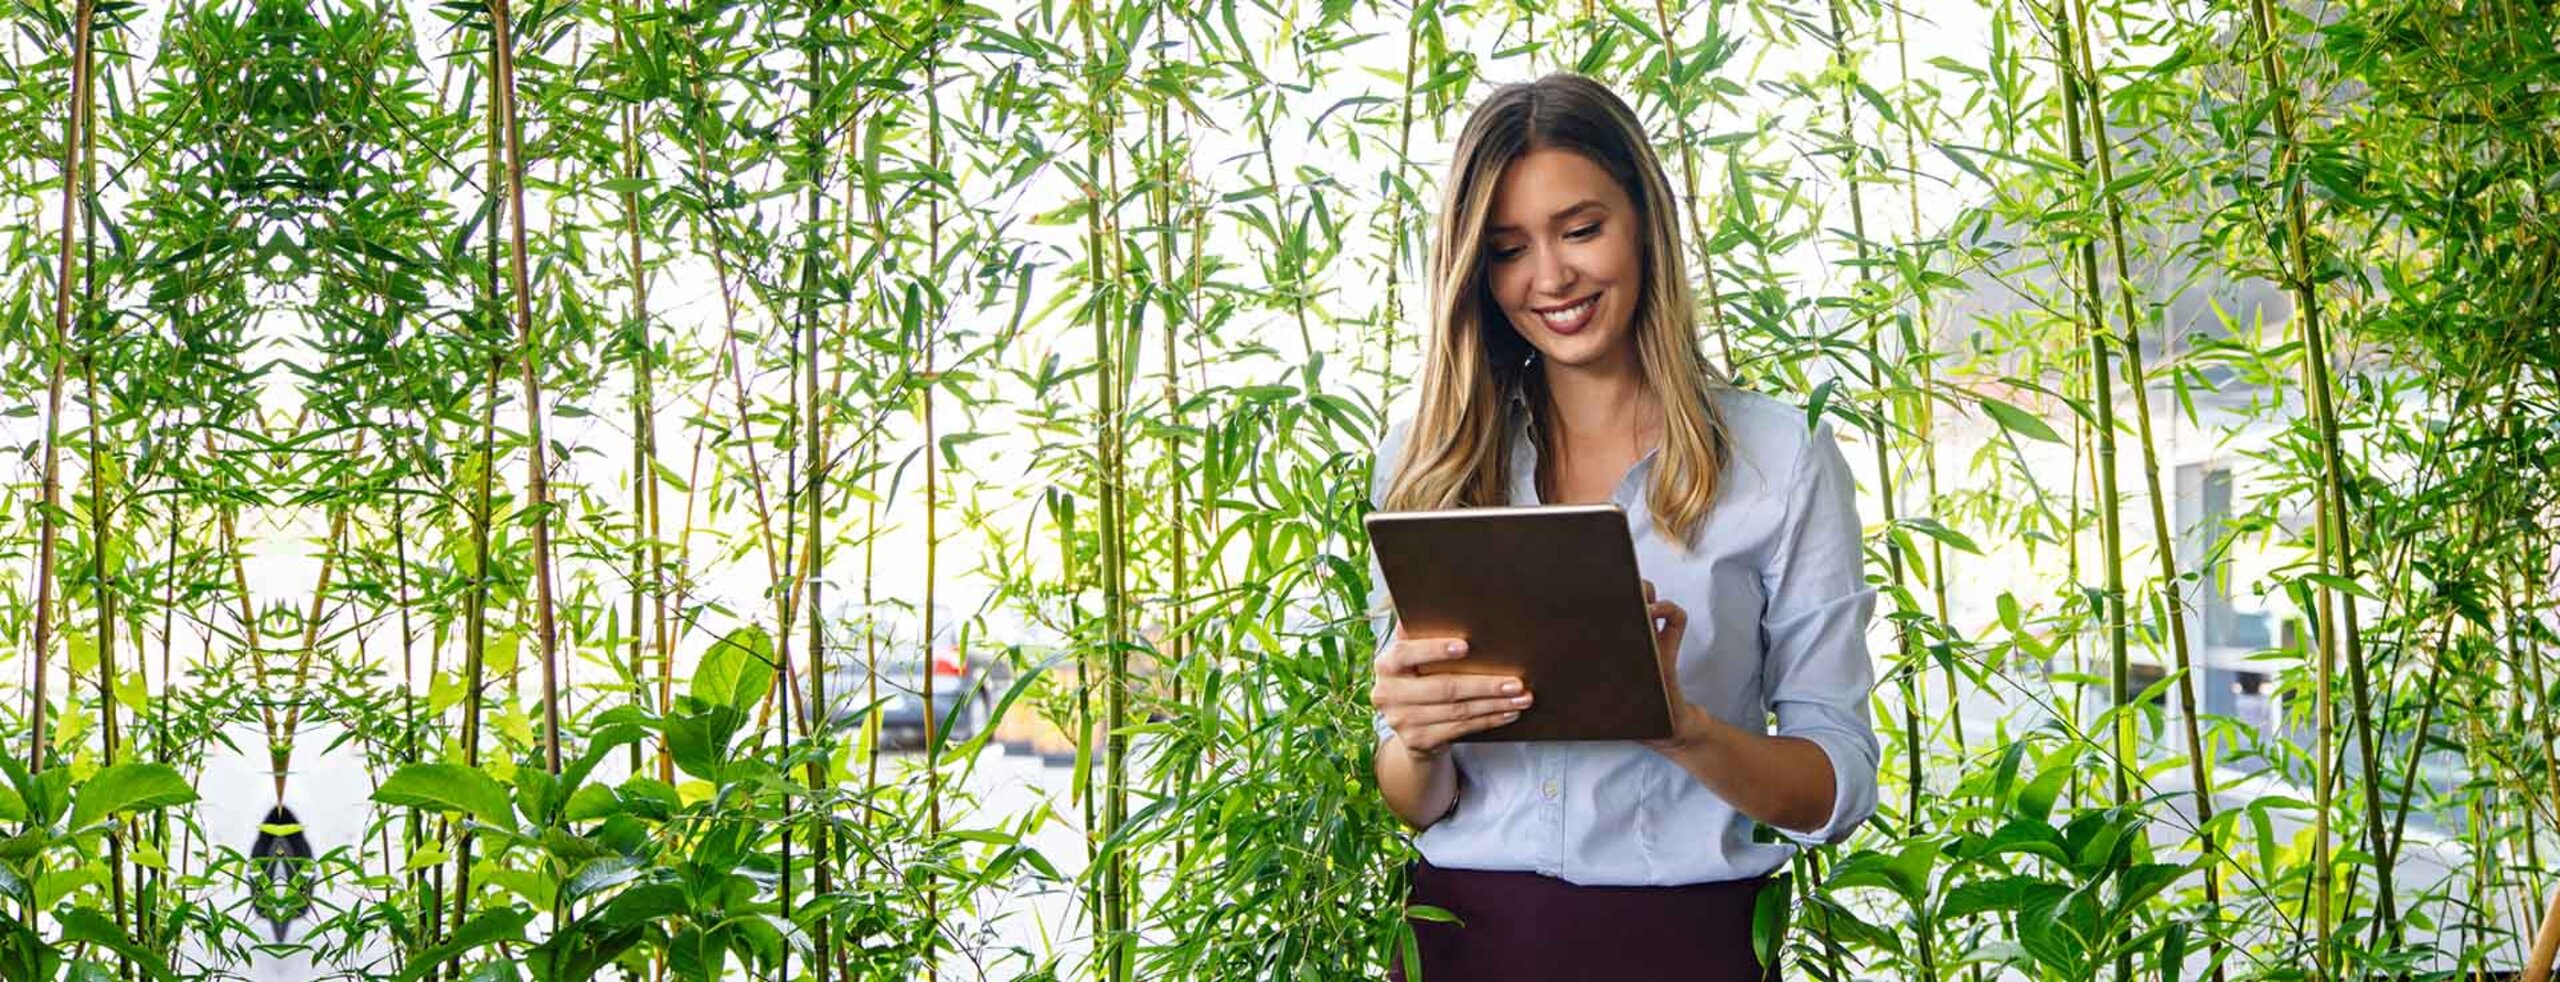 Eine Business-Frau mit Laptop vor grünen Pflanzen